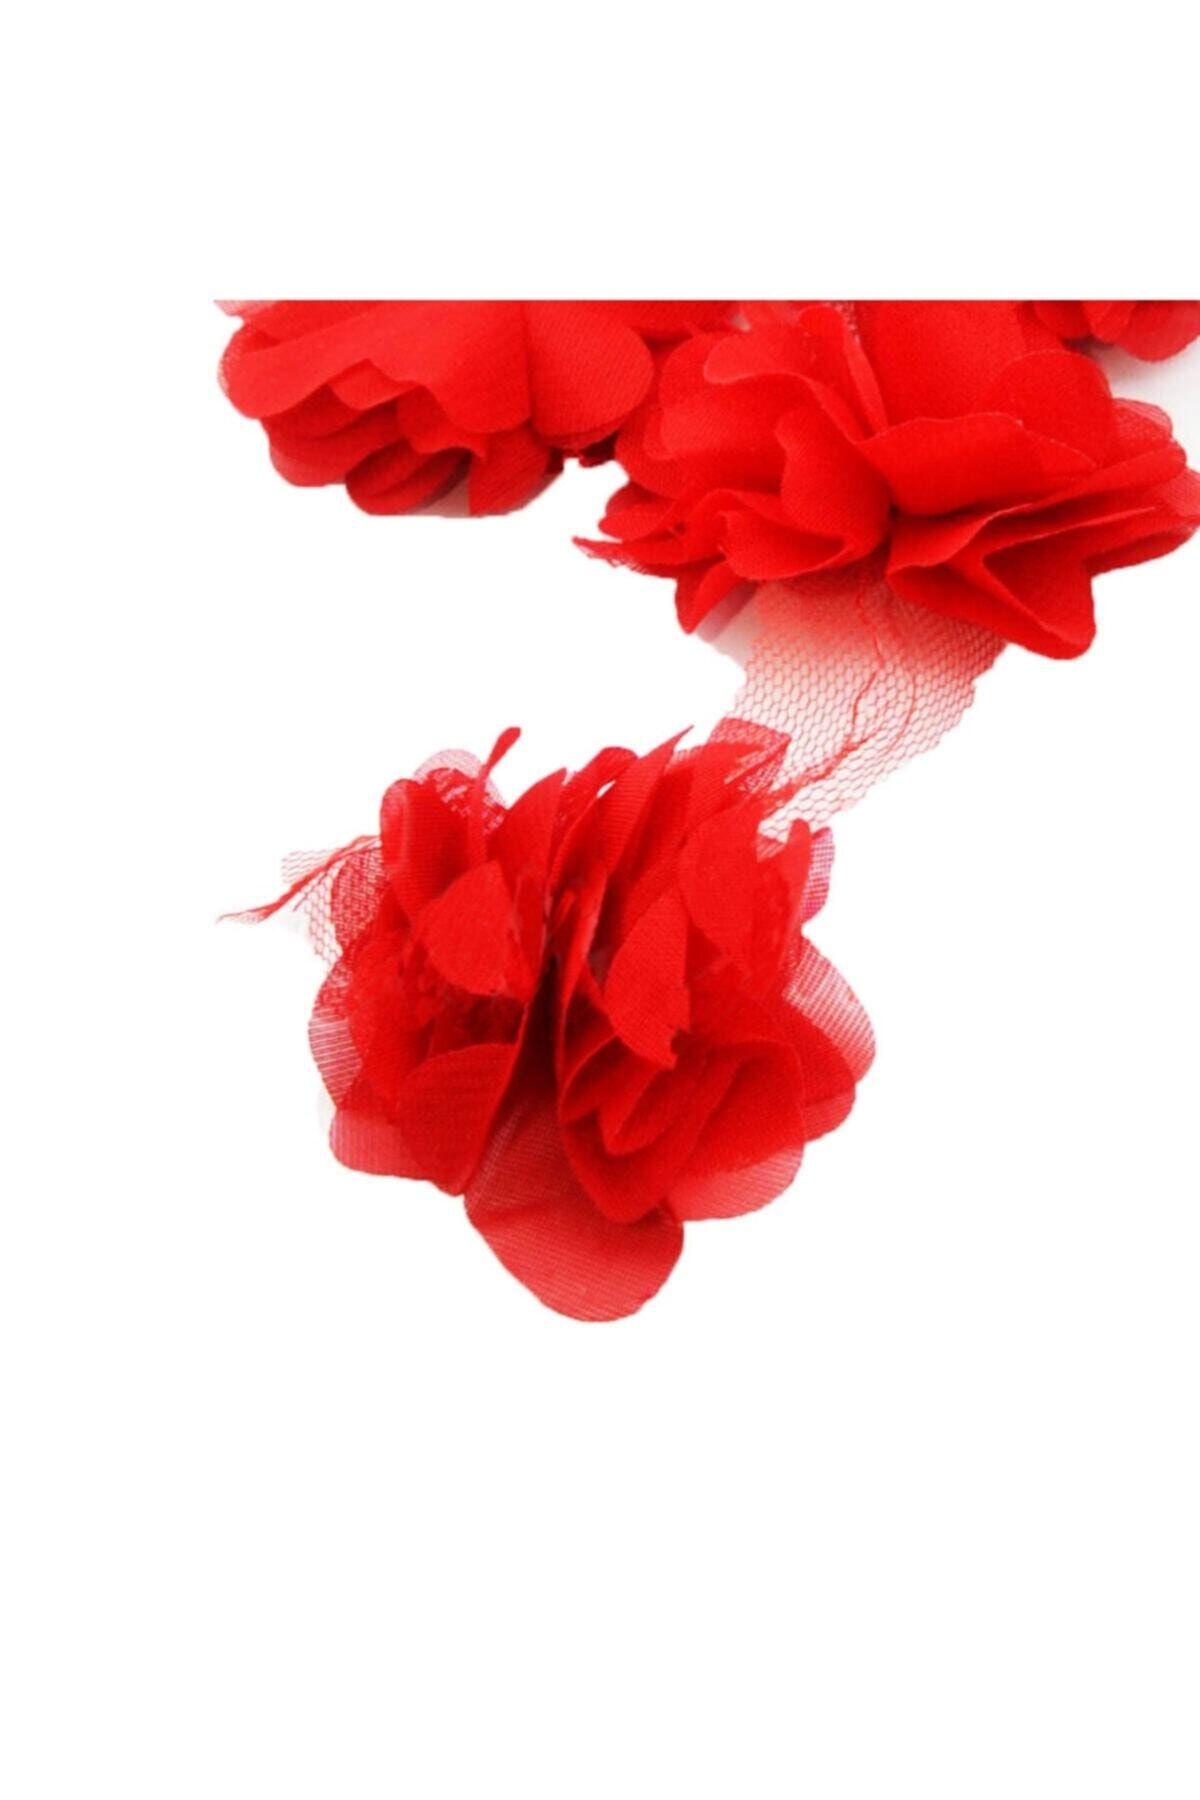 Aker Hediyelik Kırmızı Gül Lazer Kesim Çiçek 1m 12-13 Adet